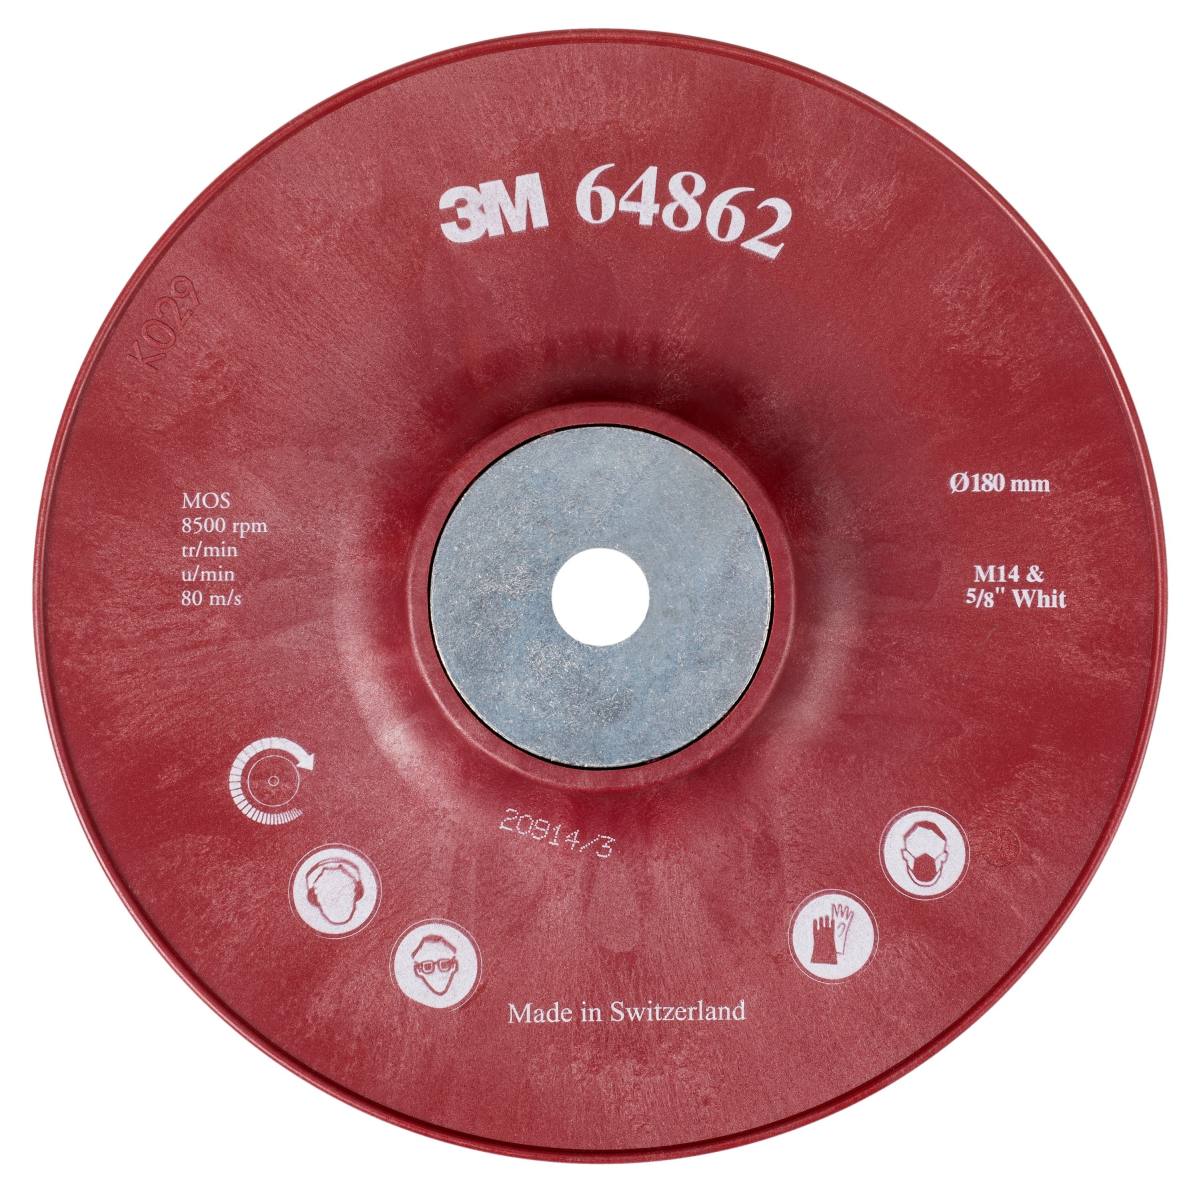 platorello 3M per impieghi gravosi, rosso, 180 mm, M14, rigato, molto duro #64862